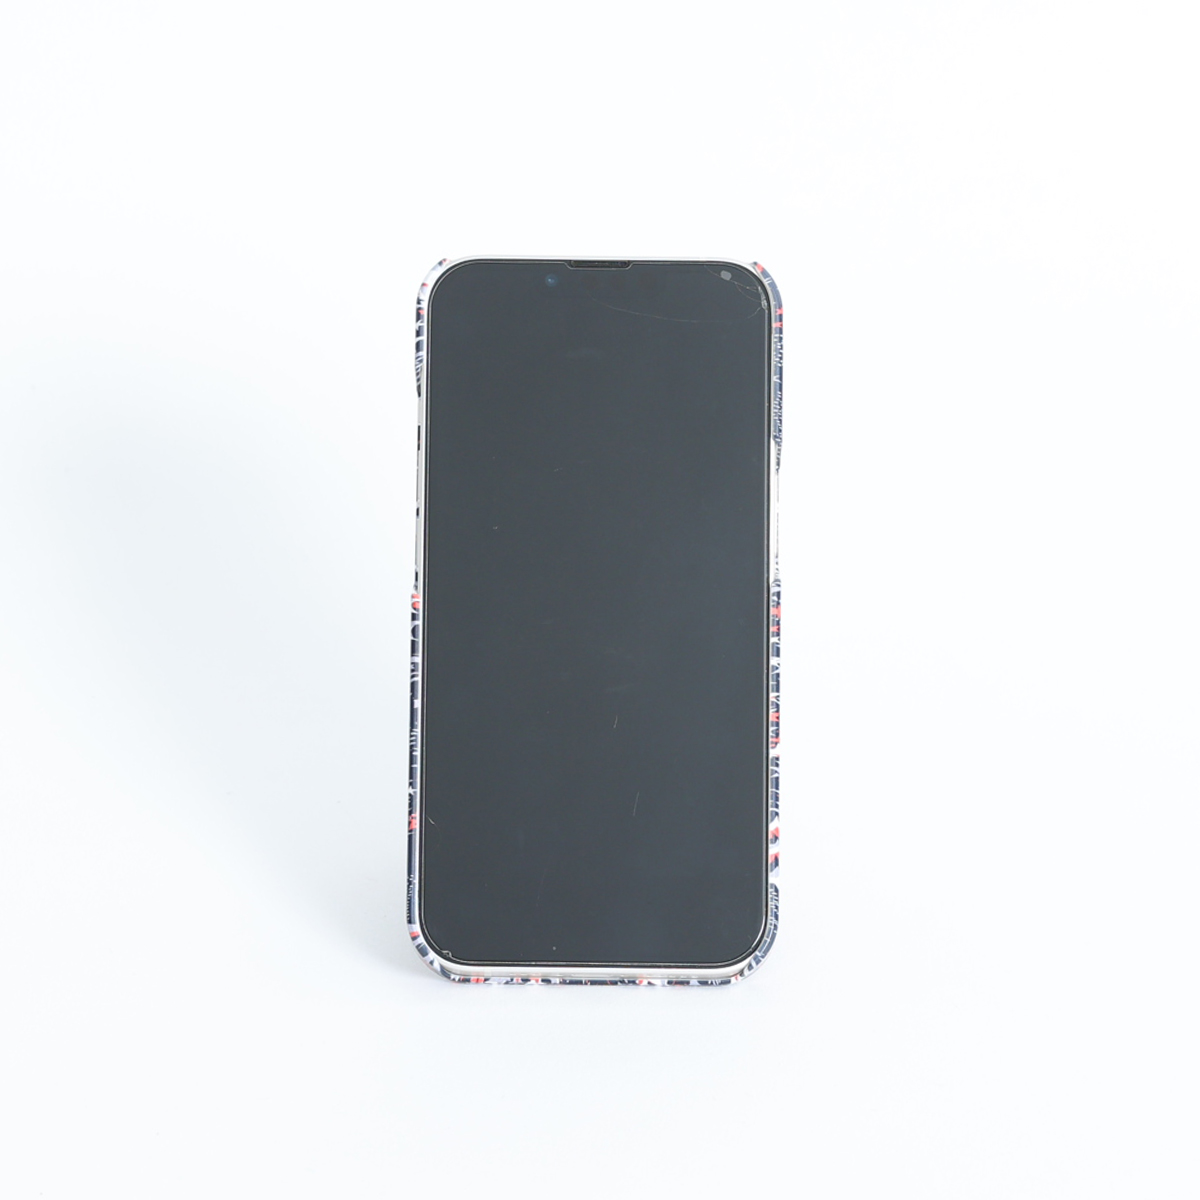 11月下旬お届け予定ご受注商品『Viola』 iphone hard case画像